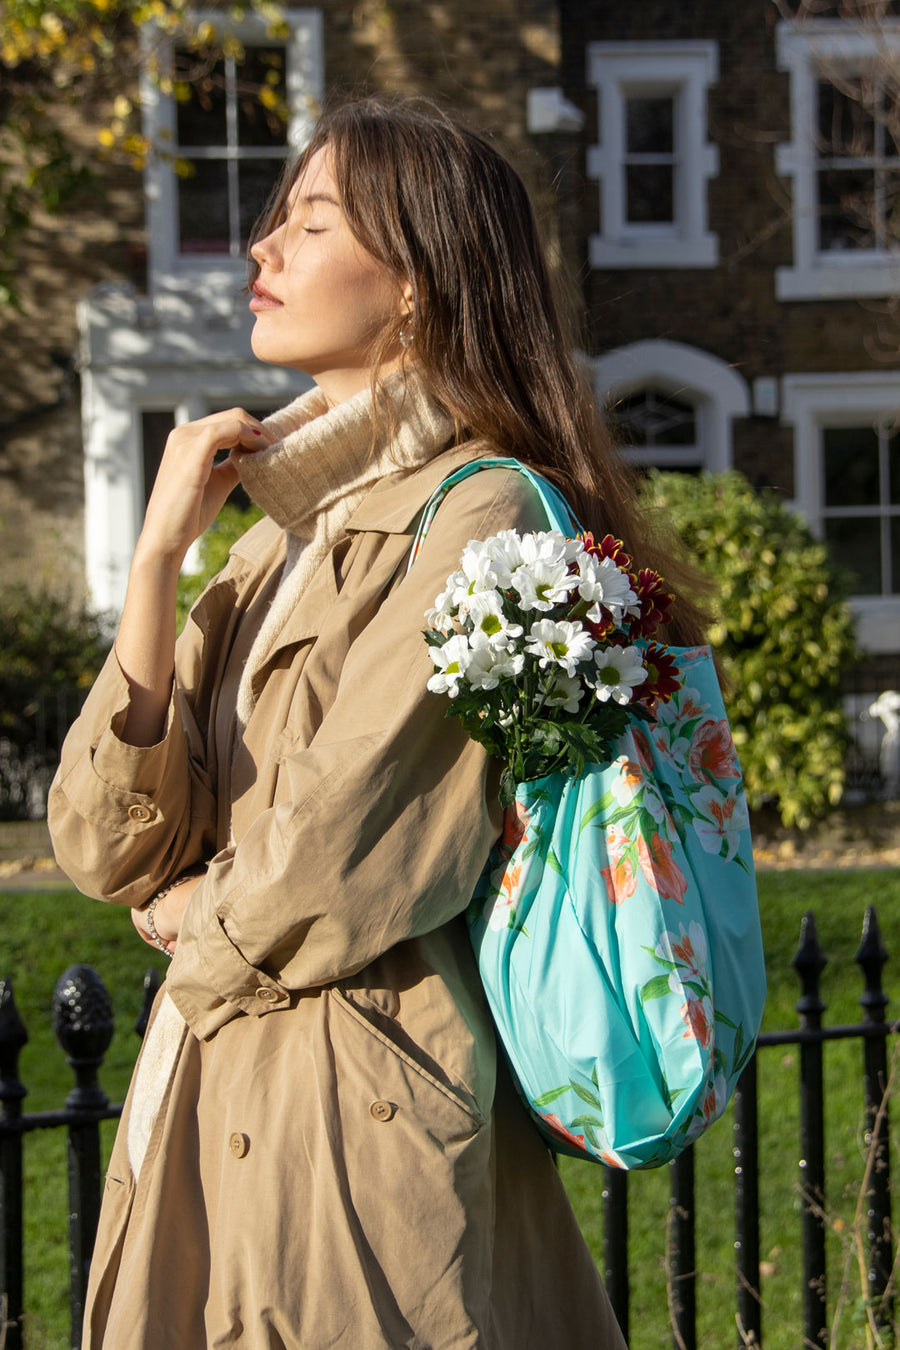 Kind Bag Floral Blue Reusable Bag Lifestyle